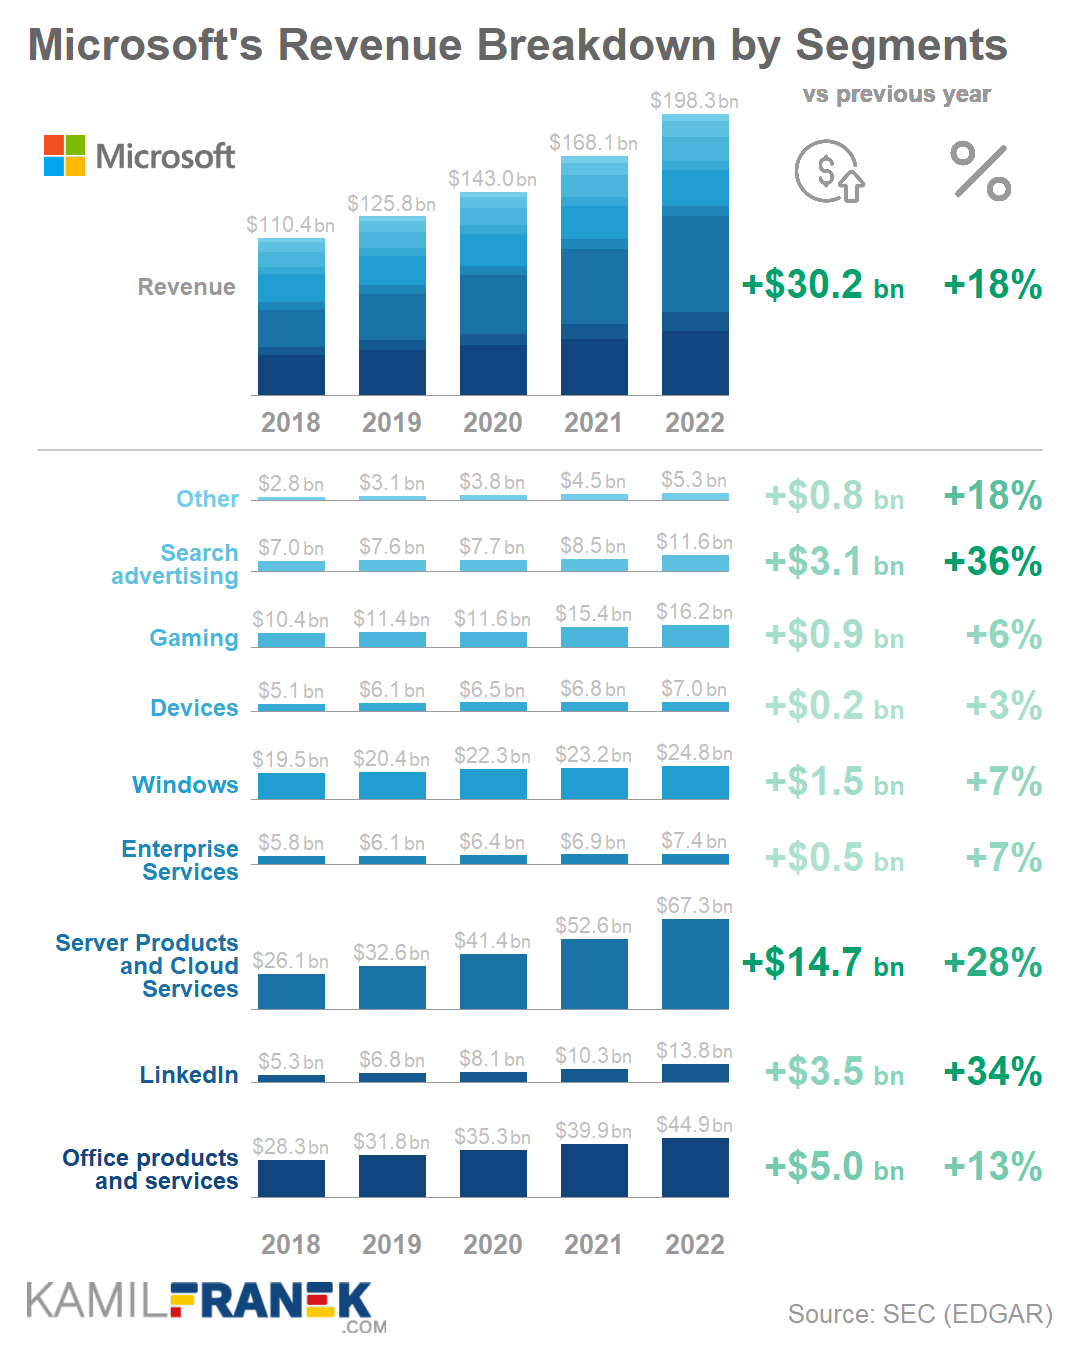 Microsoft's revenue segments breakdown chart